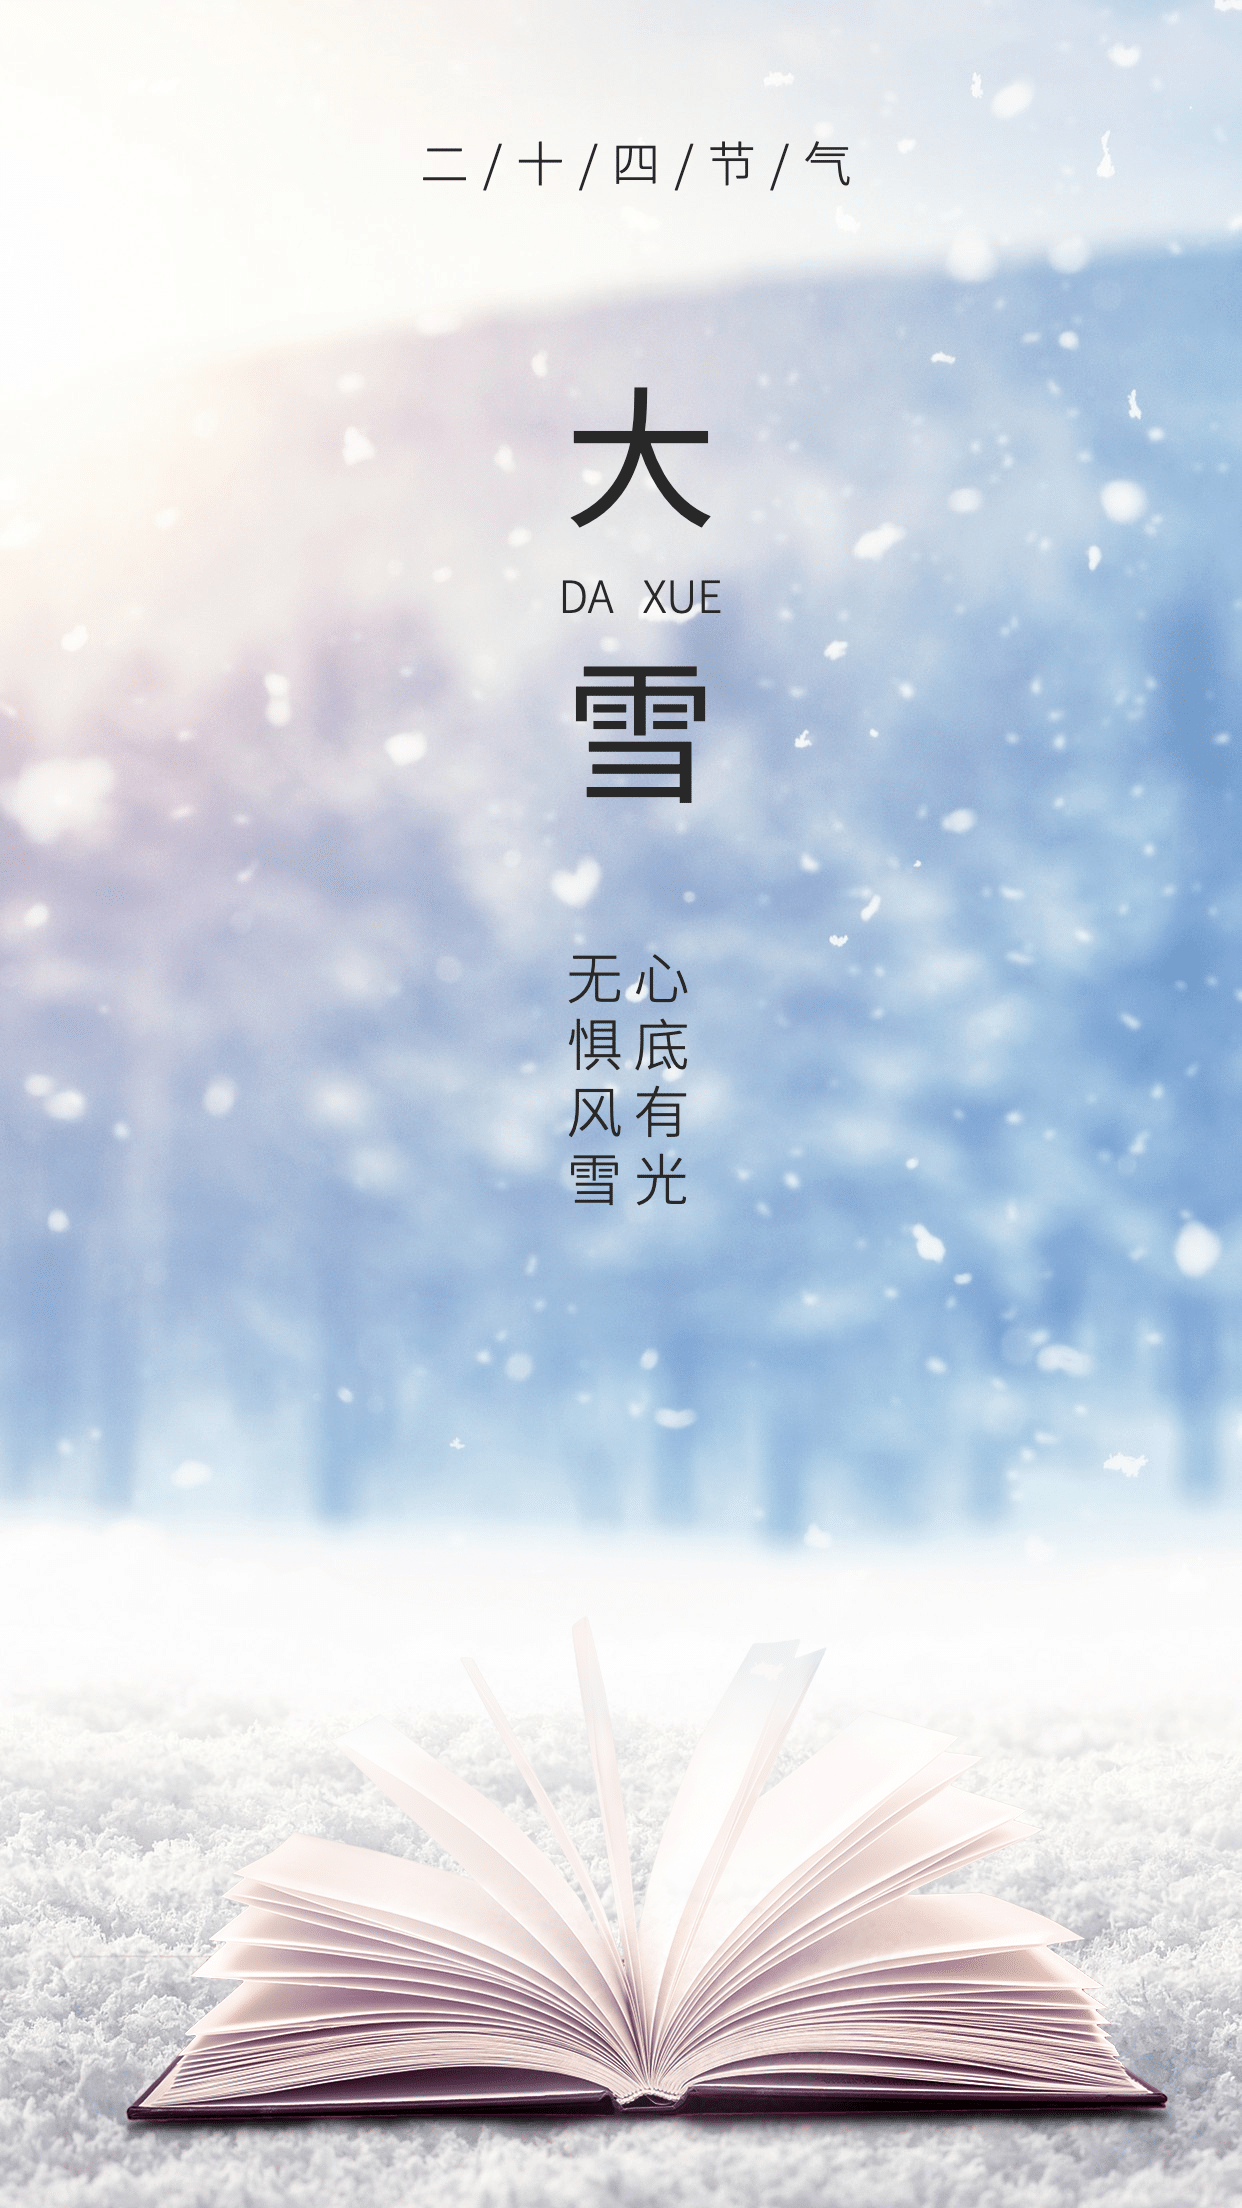 大雪节日图书教育宣传海报